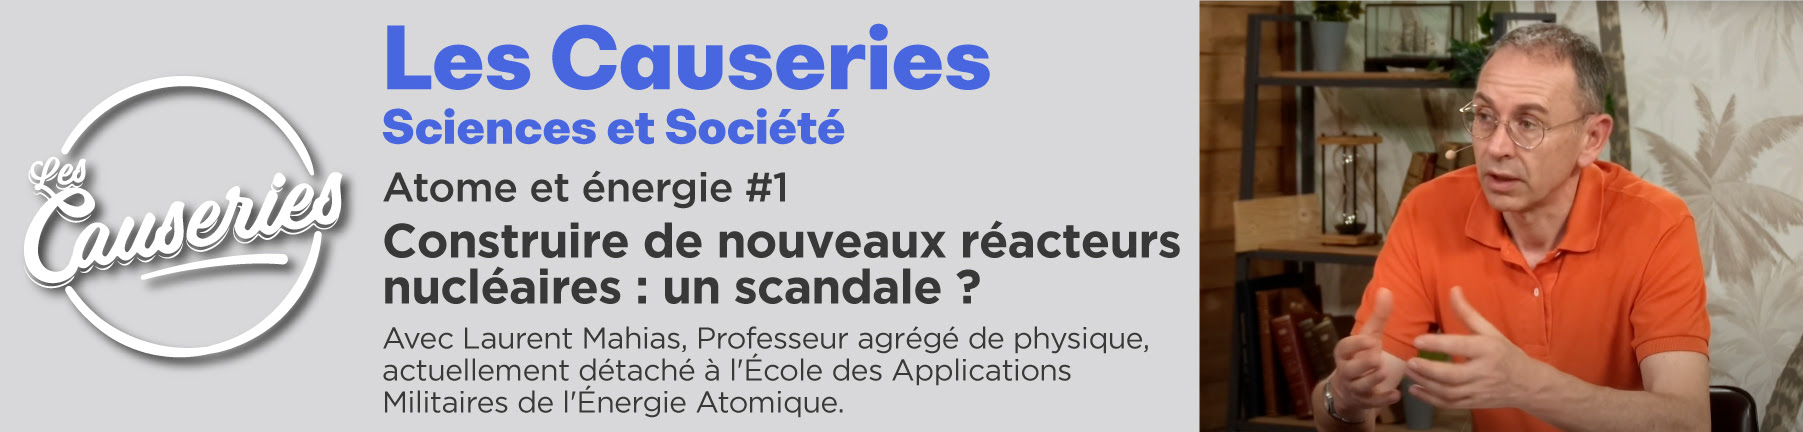 Causeries Sciences et Société